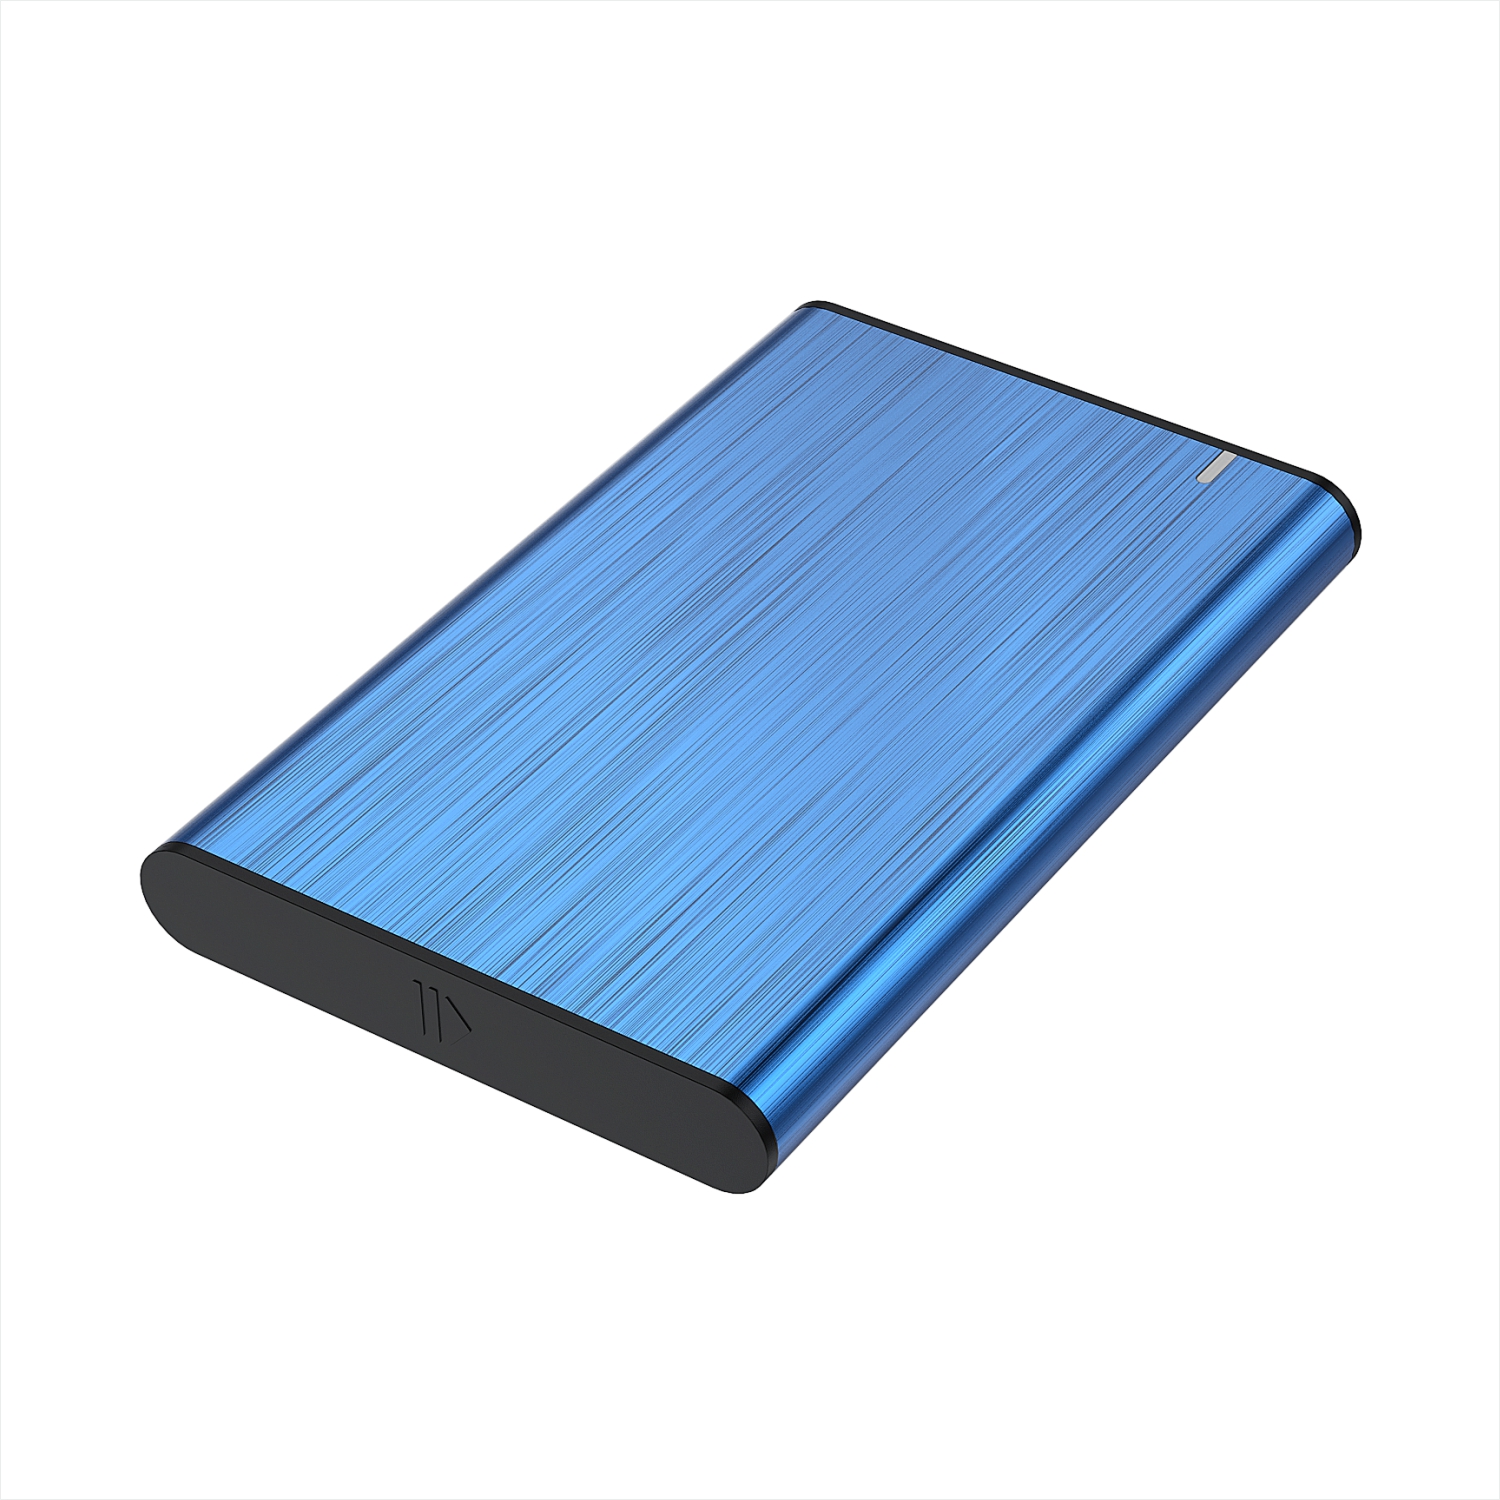 Aisens Boîtier Externe 2.5" pour Disques Durs 9.5mm SATA I - II et III vers USB 3.0/USB 3.1 GEN1 - Couleur Bleu